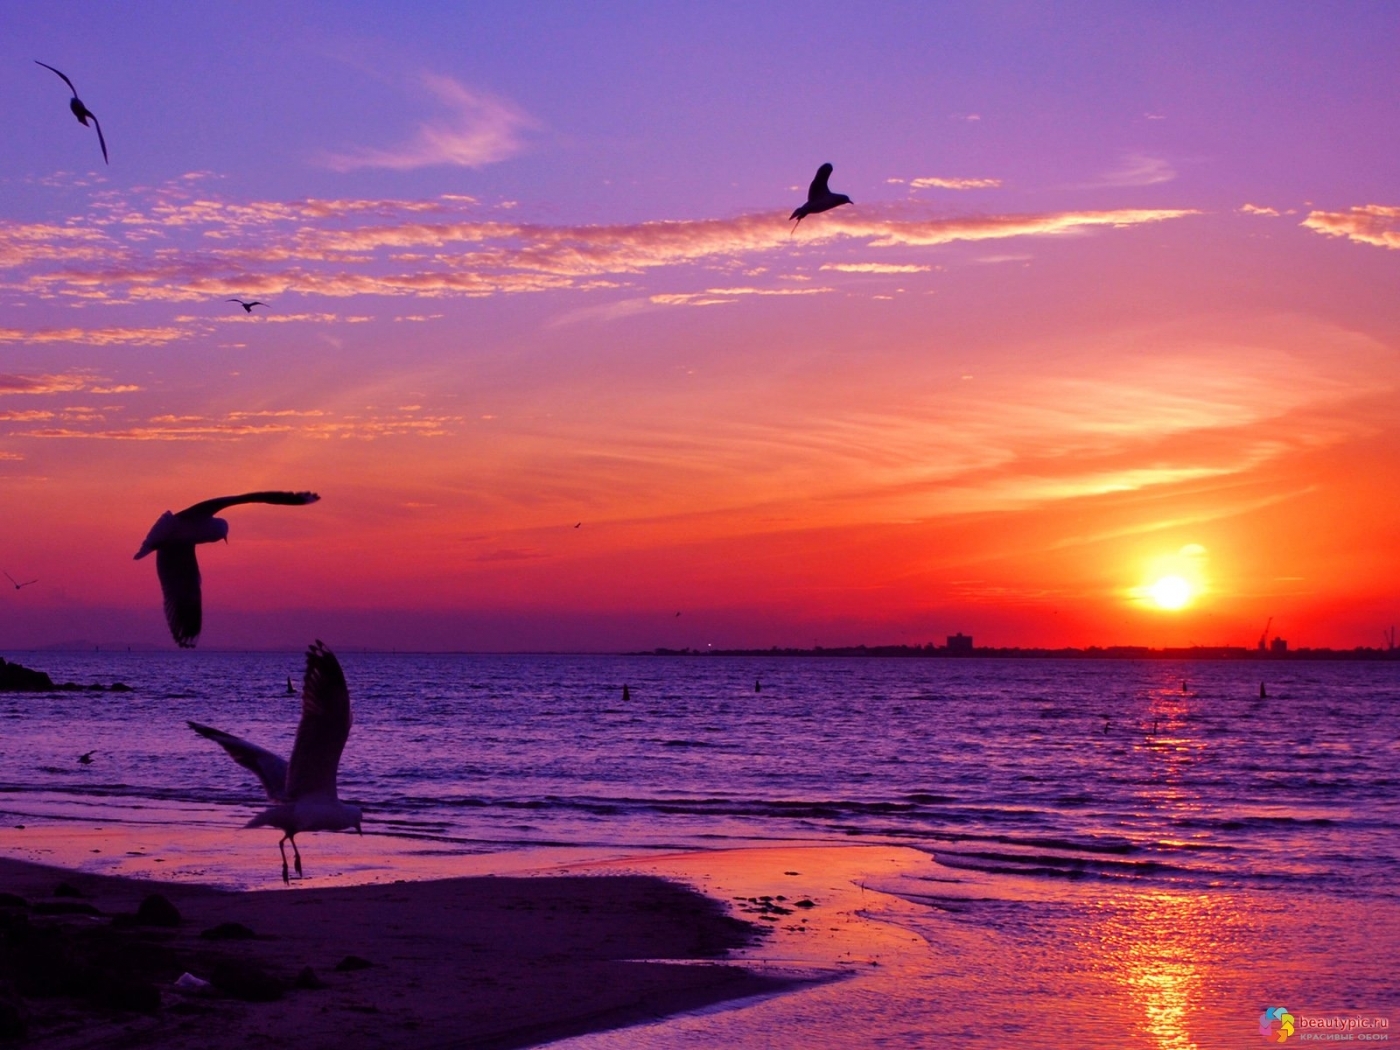 landscape, sunset, sea, seagulls